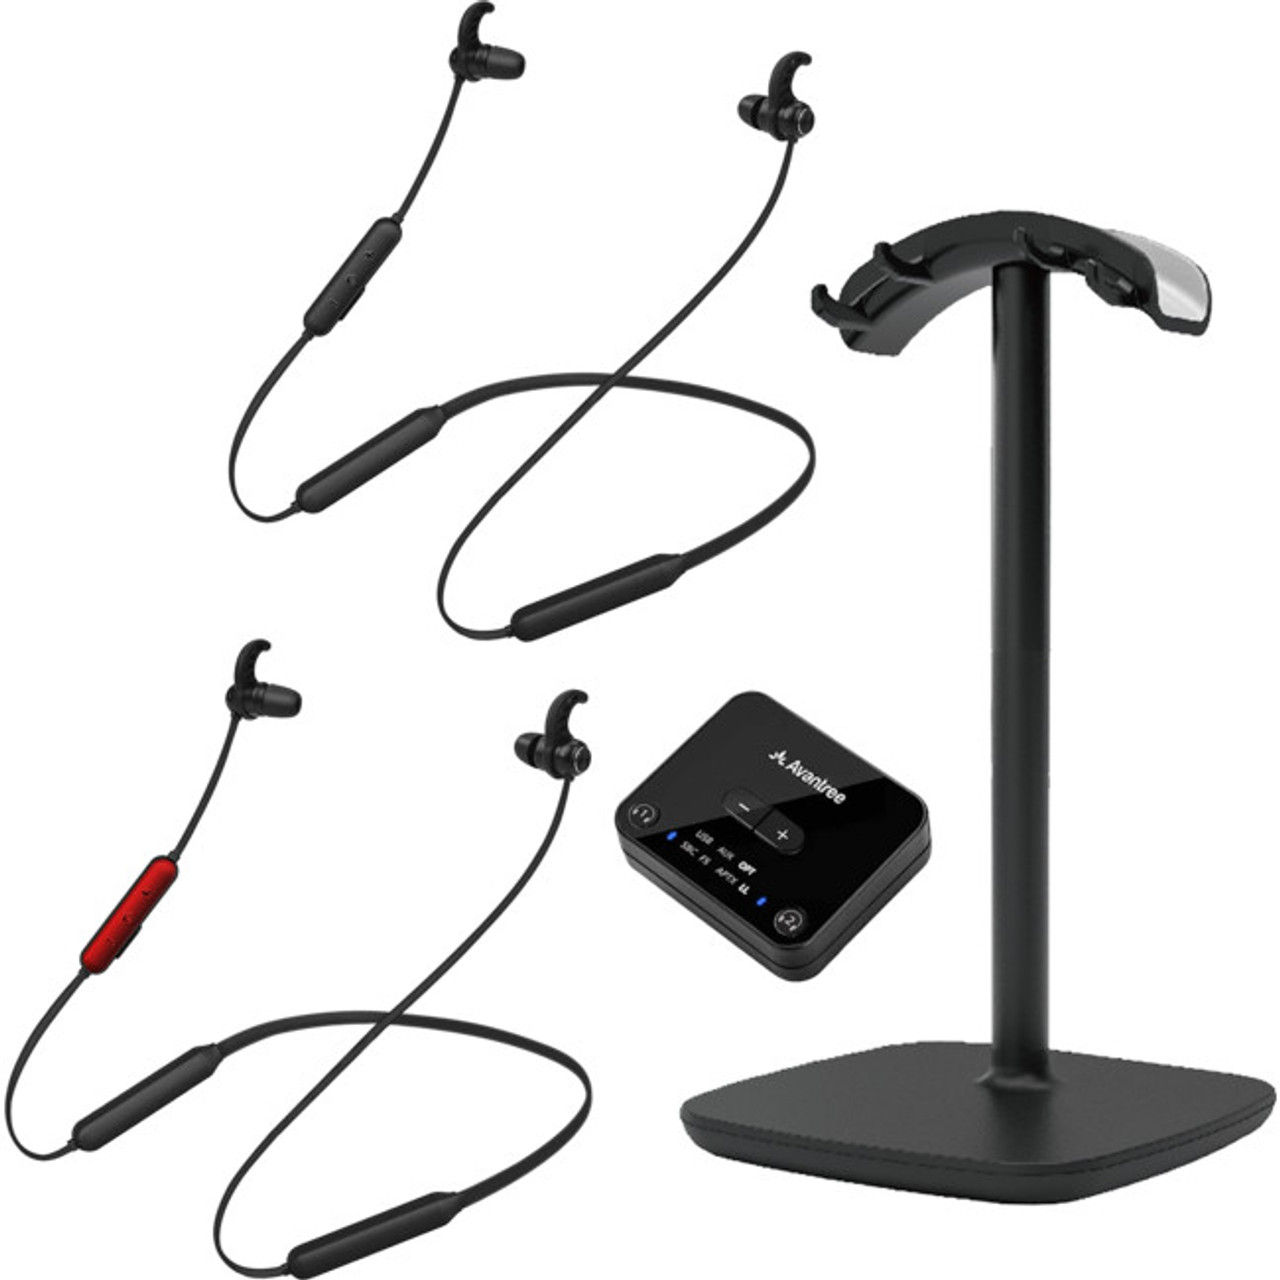 Avantree HT41866 Dual Low Latency Bluetooth 5.0 In-Ear Headphones & Transmitter Set For TV